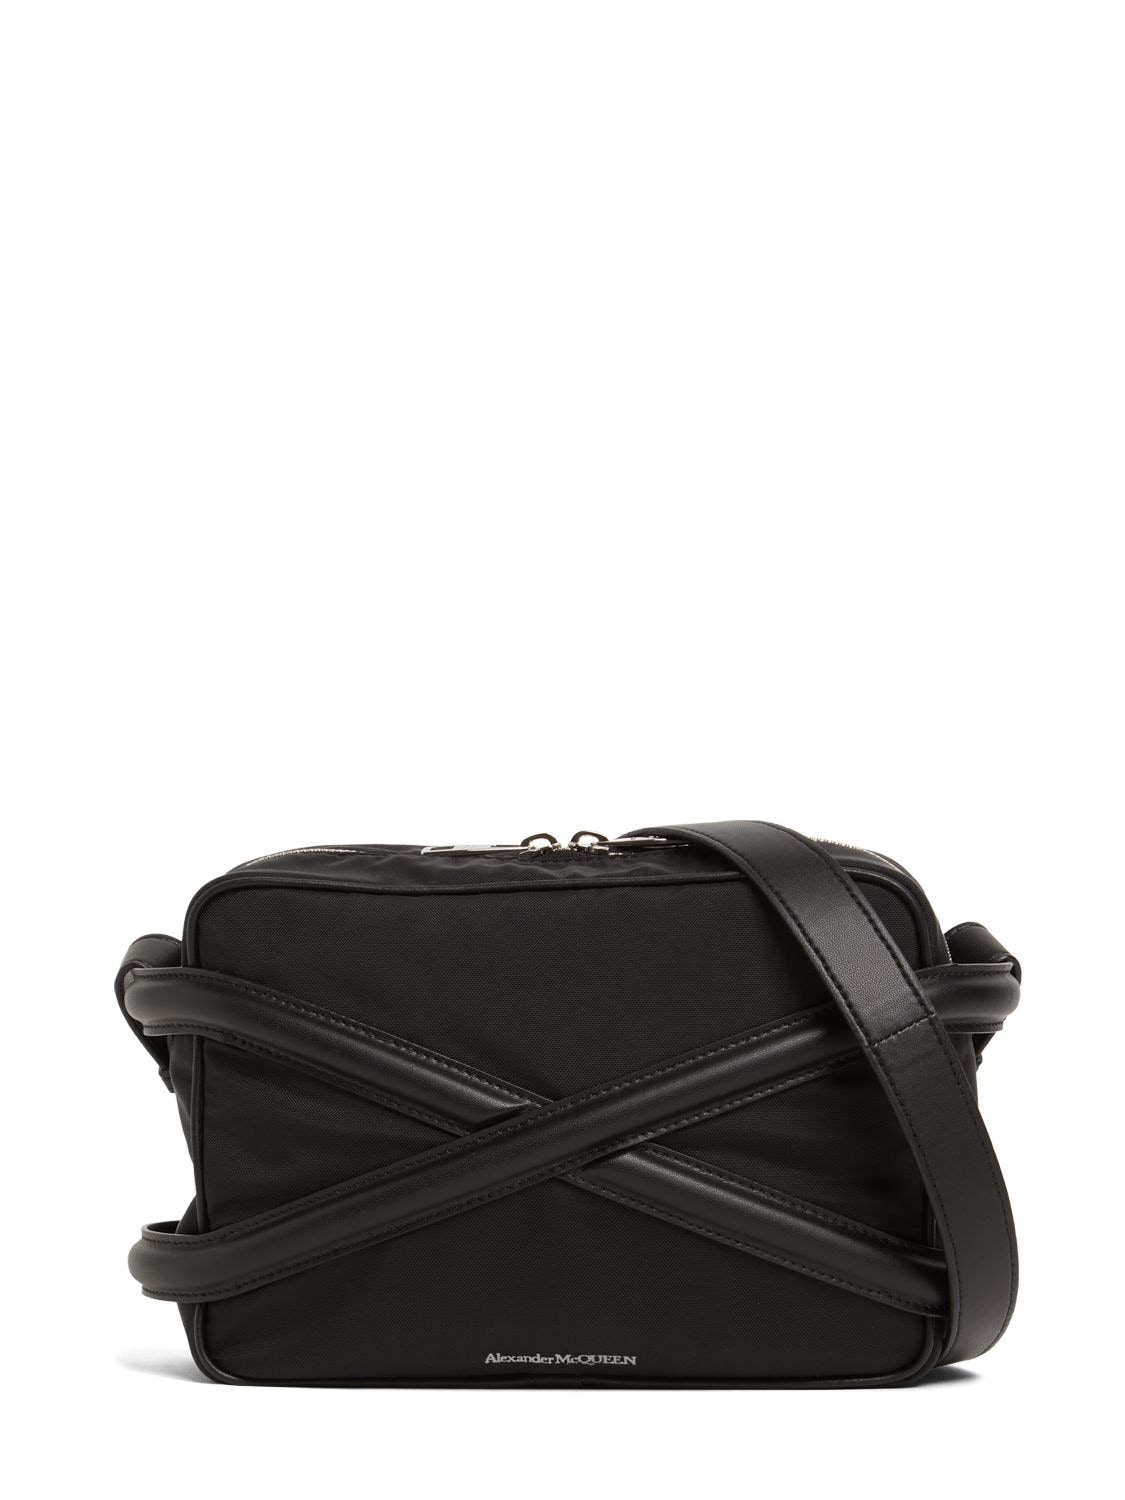 Alexander Mcqueen Leather Crossbody Bag In Black